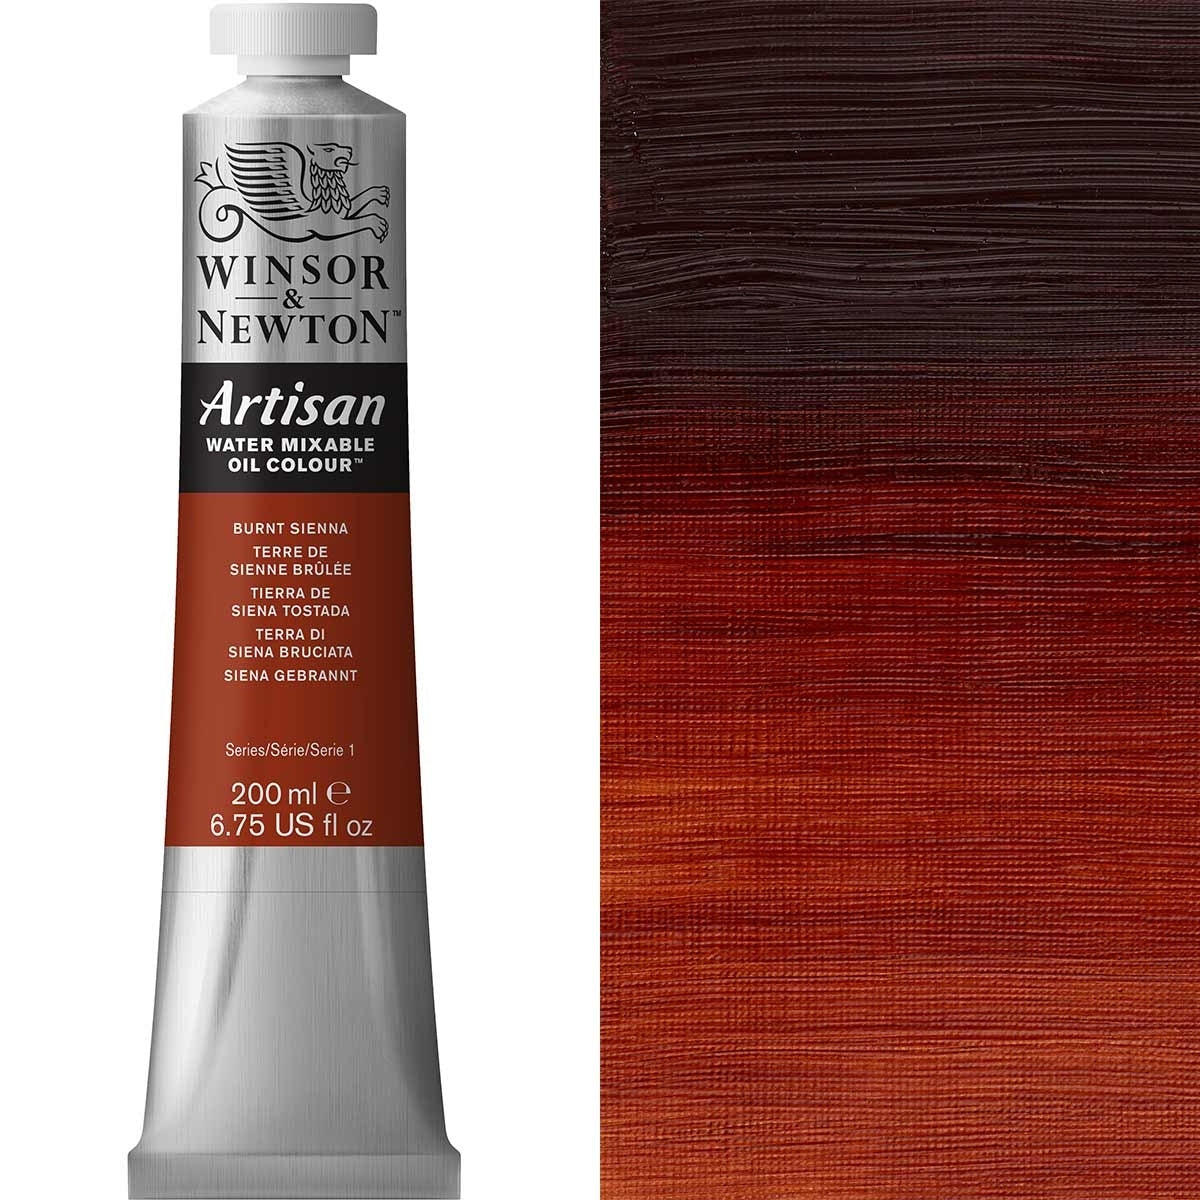 Winsor e Newton - Watermixable di colore olio artigianale - 200 ml - Siena bruciata